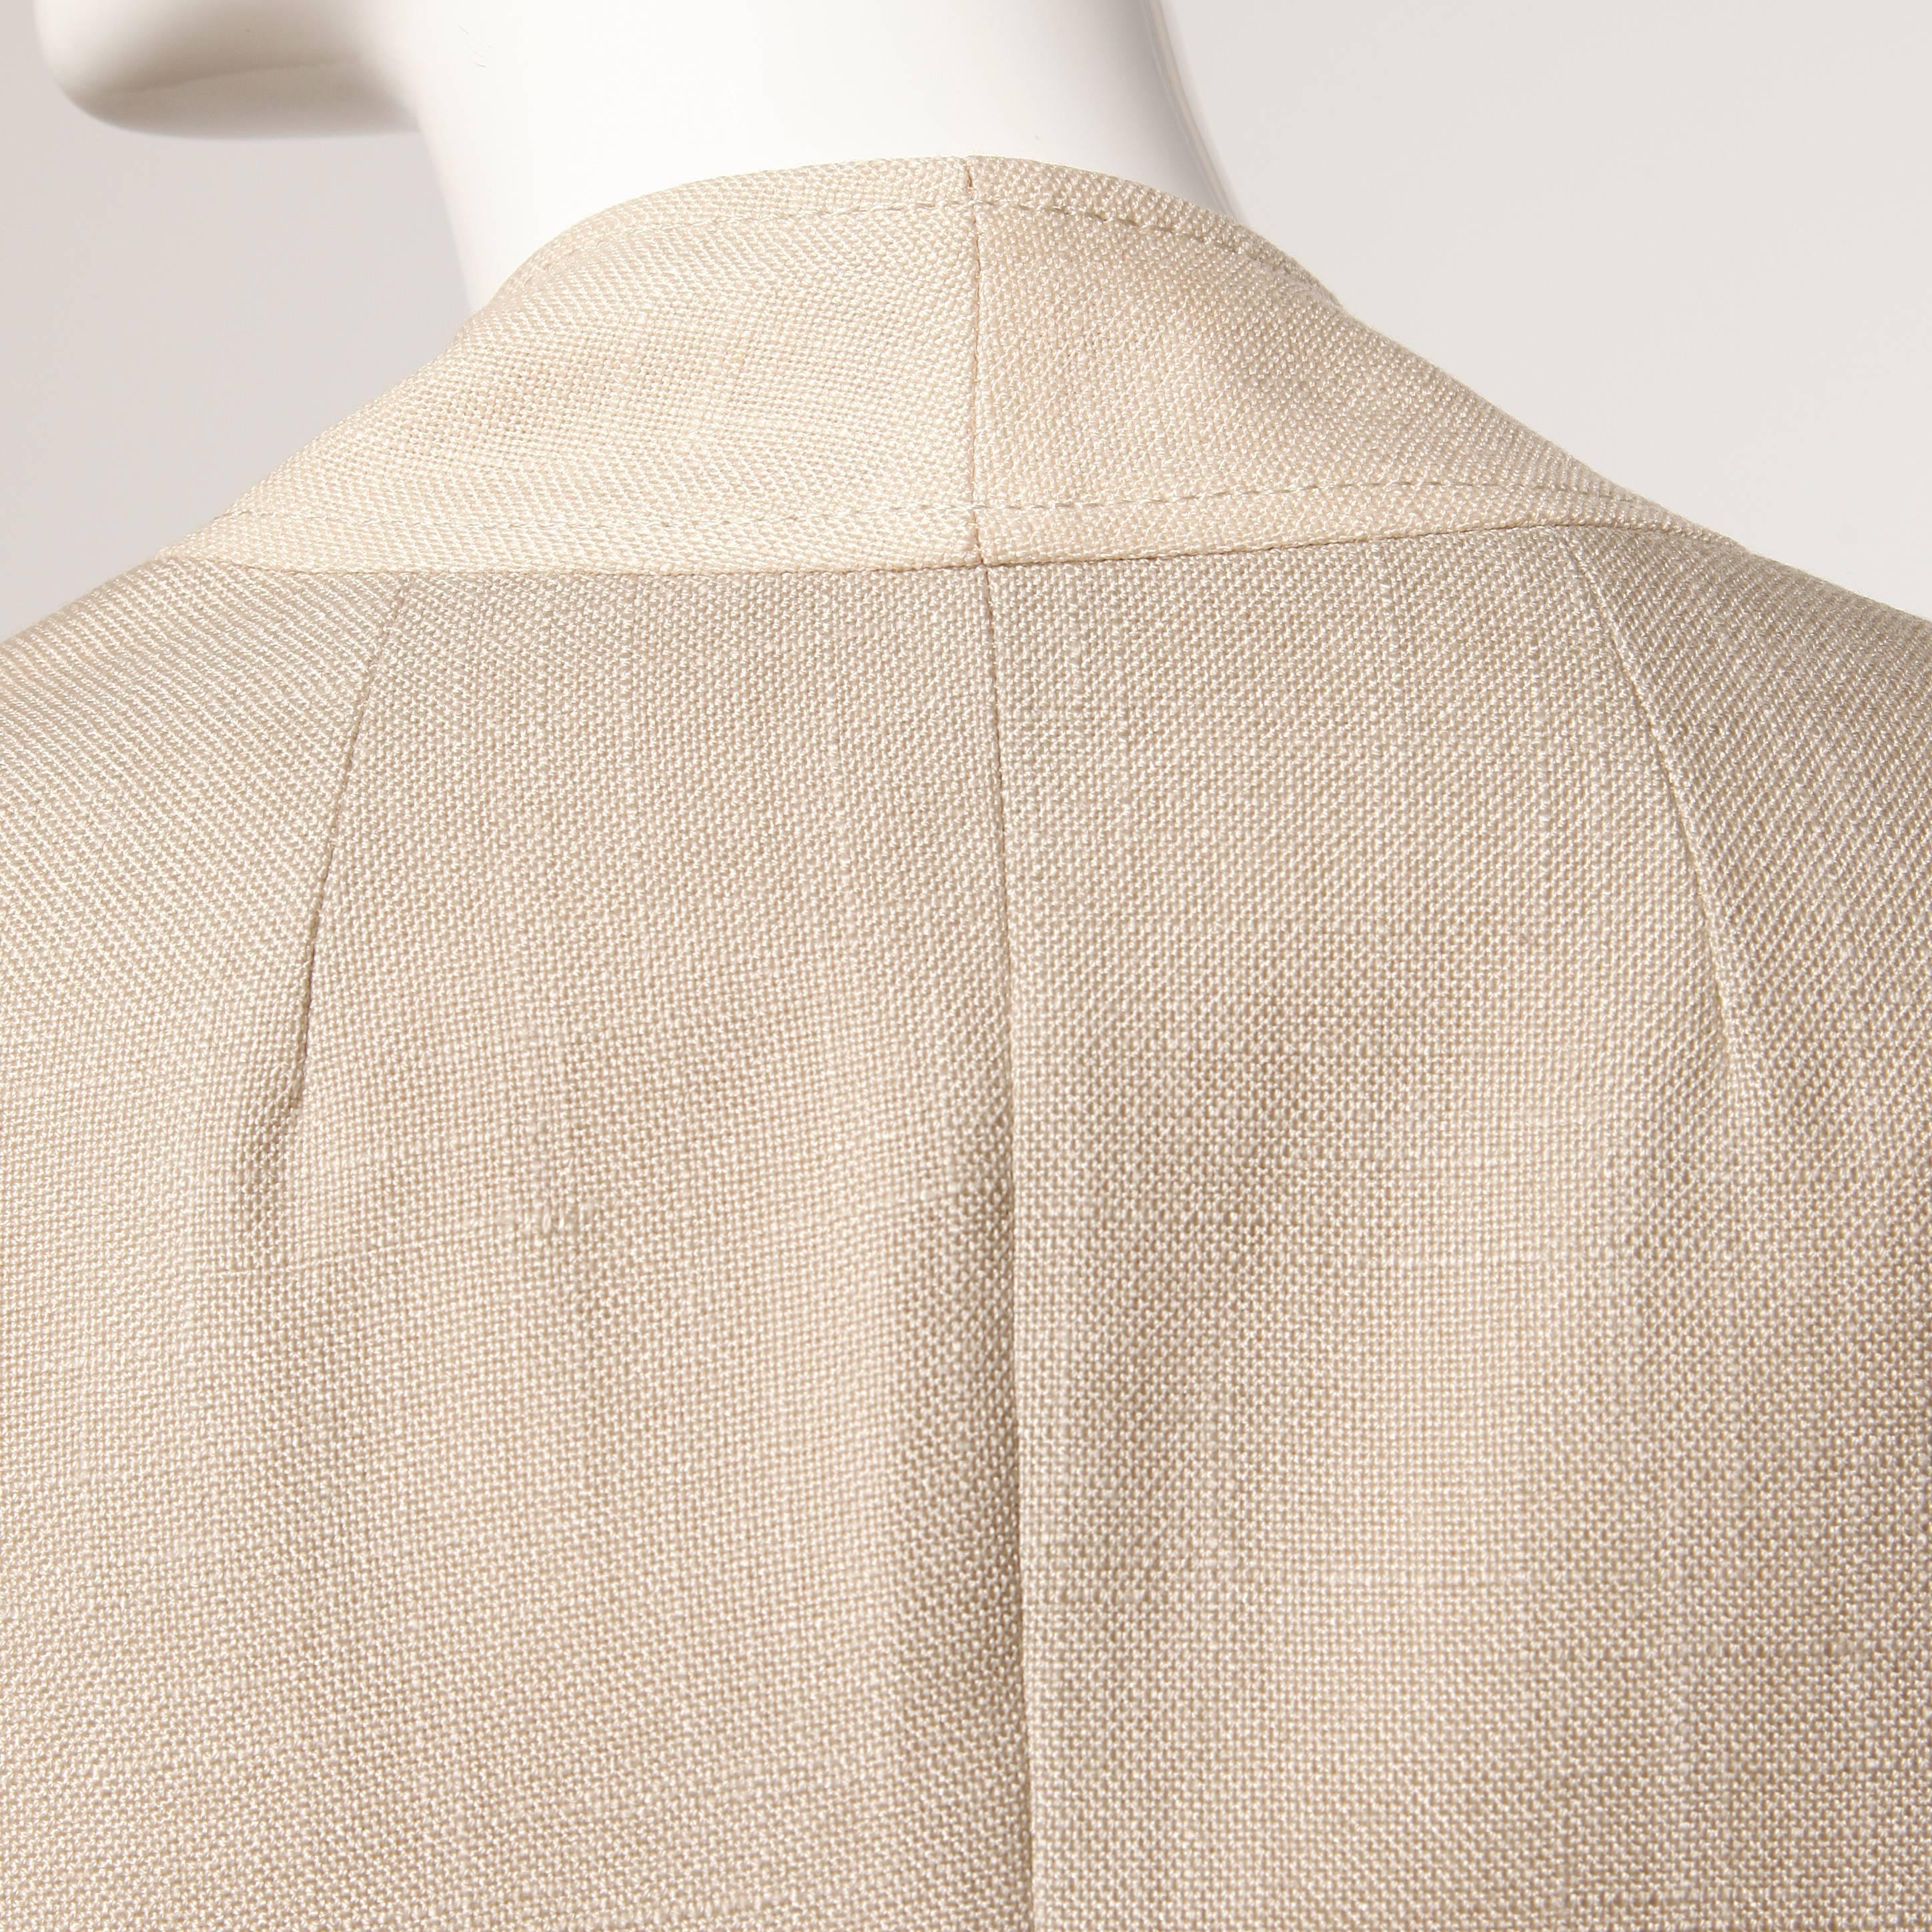 Don Simonelli Vintage Neutral Minimalist Linen Coat and Sash For Sale ...